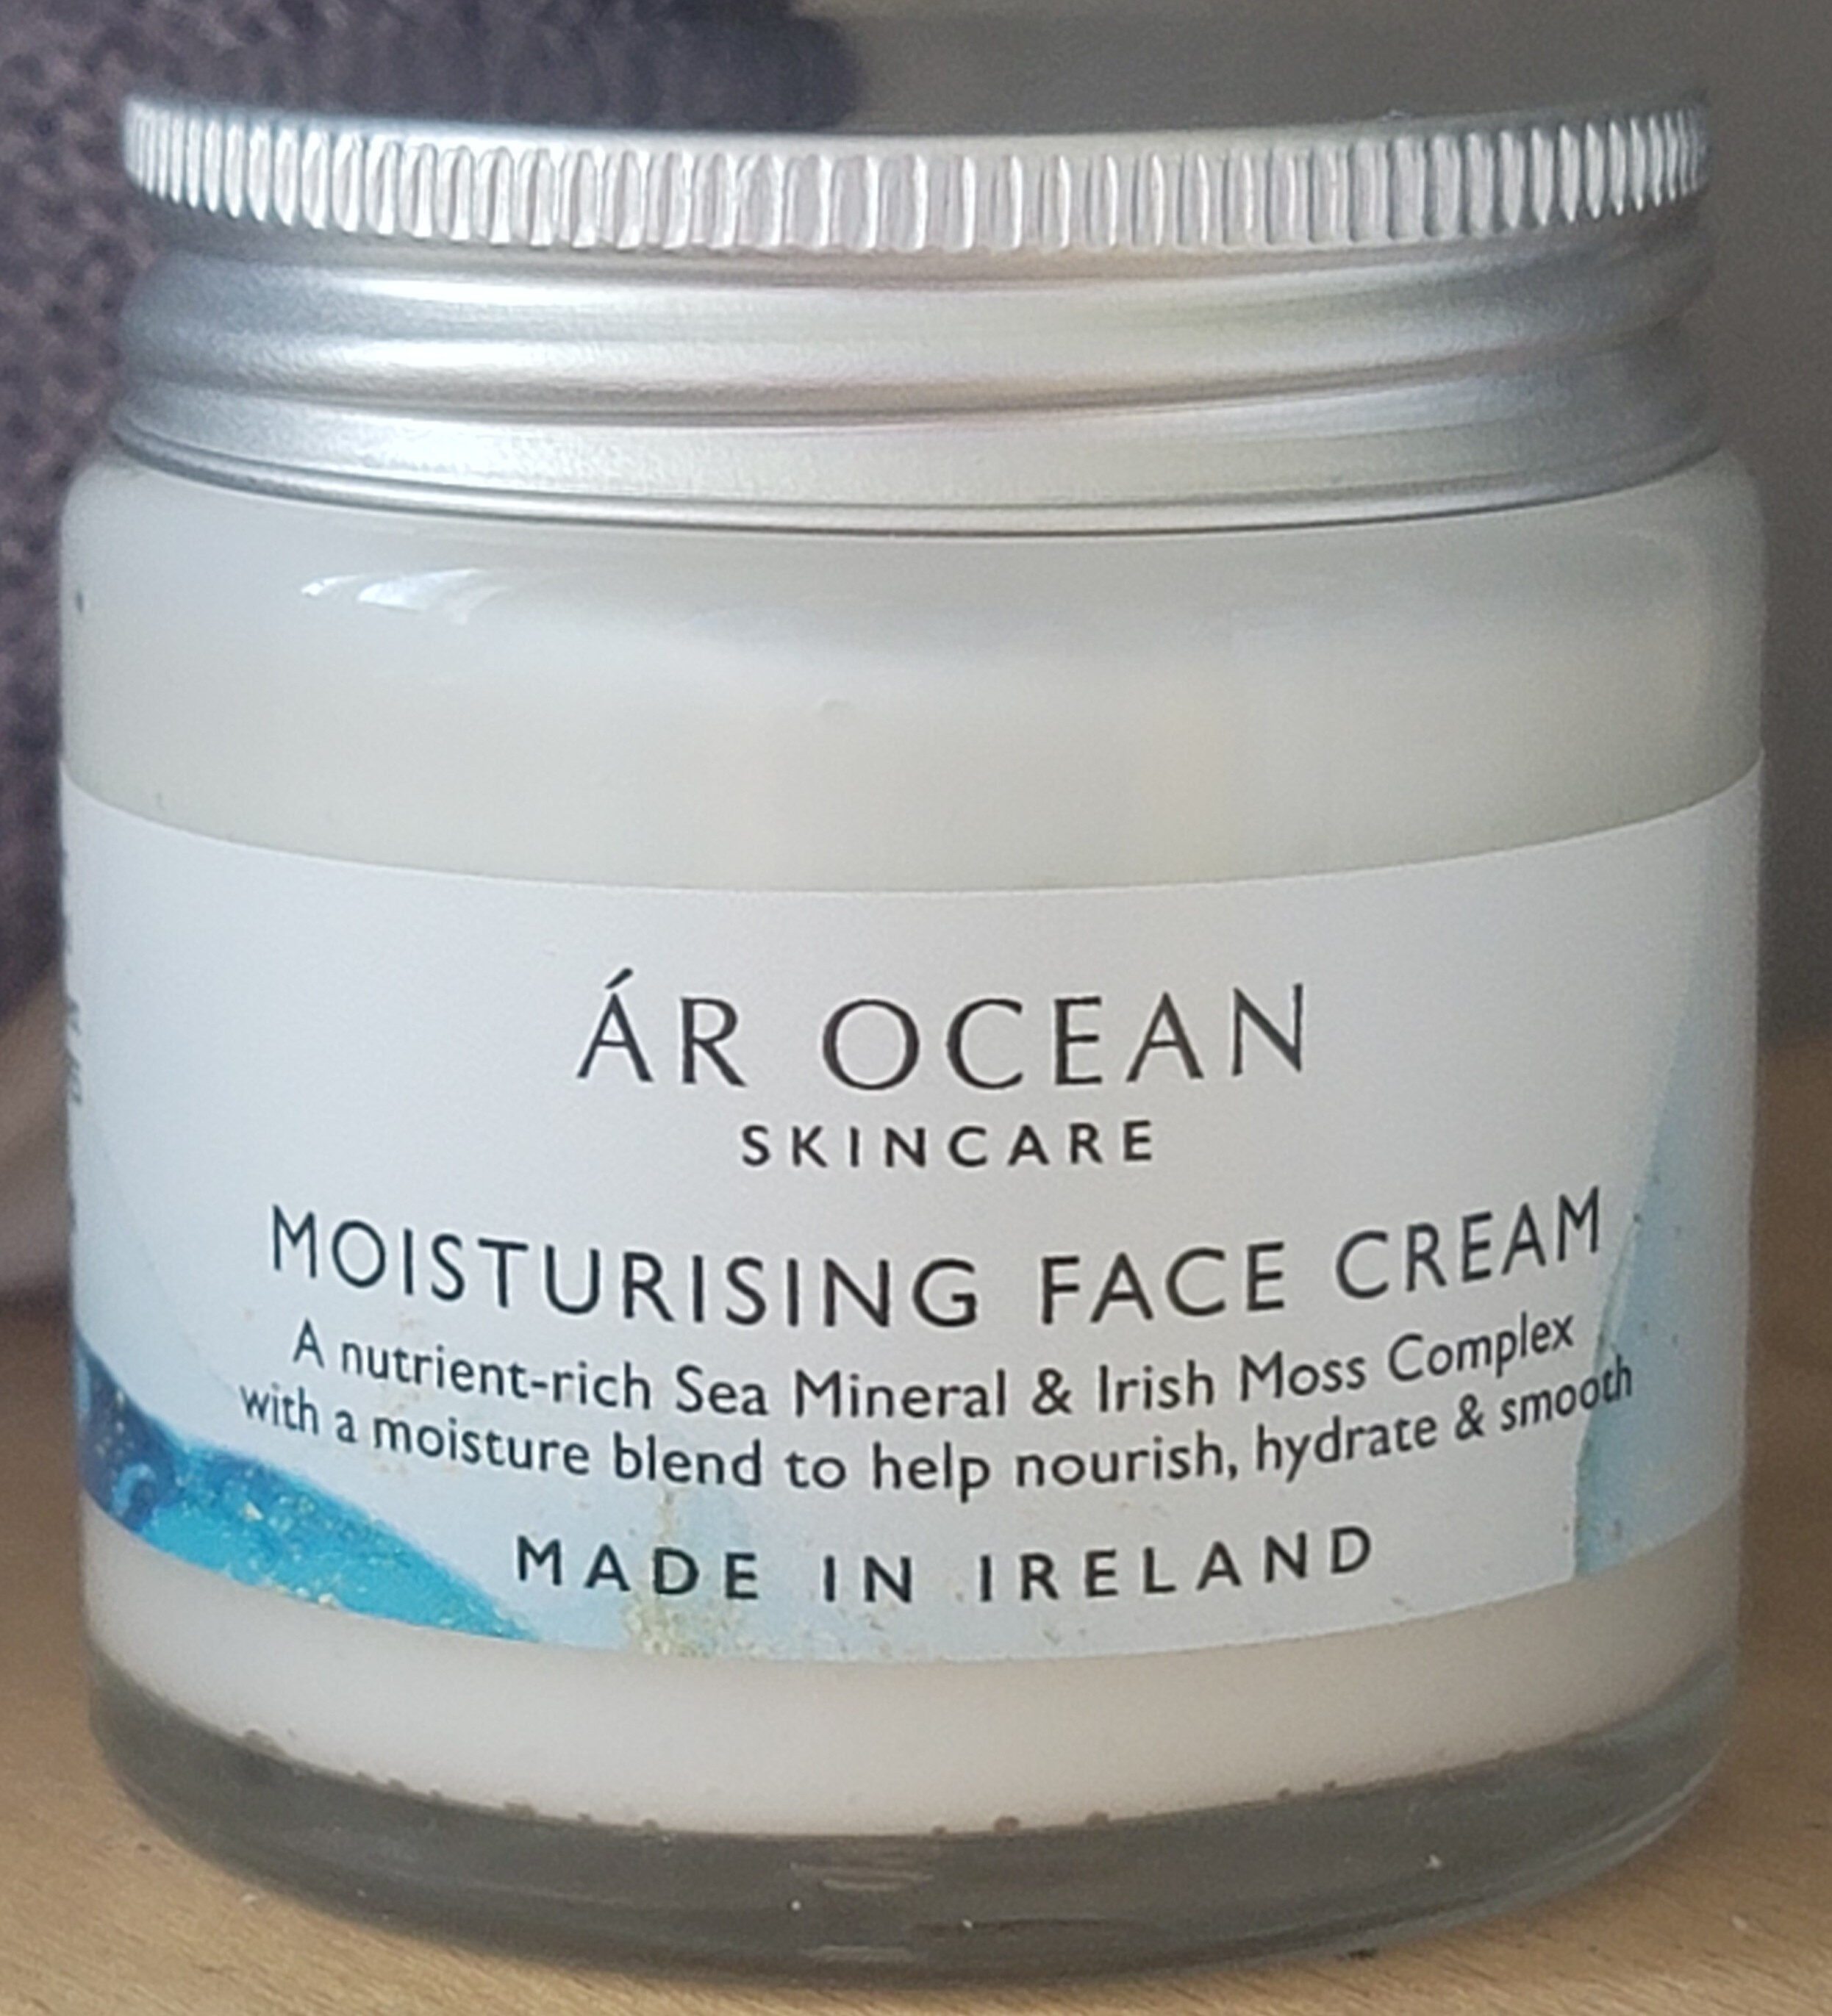 Moisturising Face Cream - Produkto - en